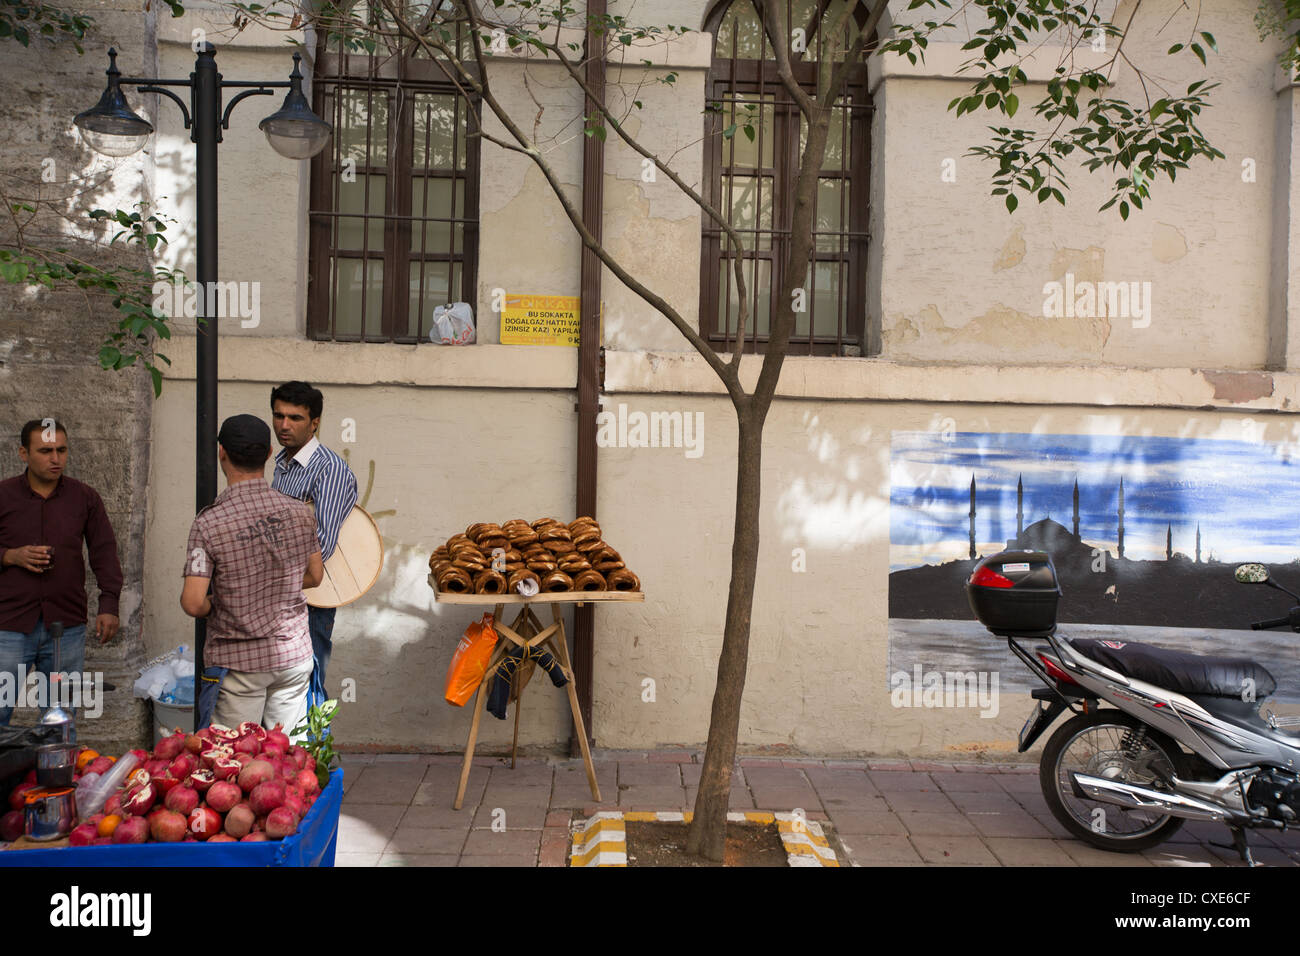 Food stall in street scene in Istanbul, in Turkey. Stock Photo